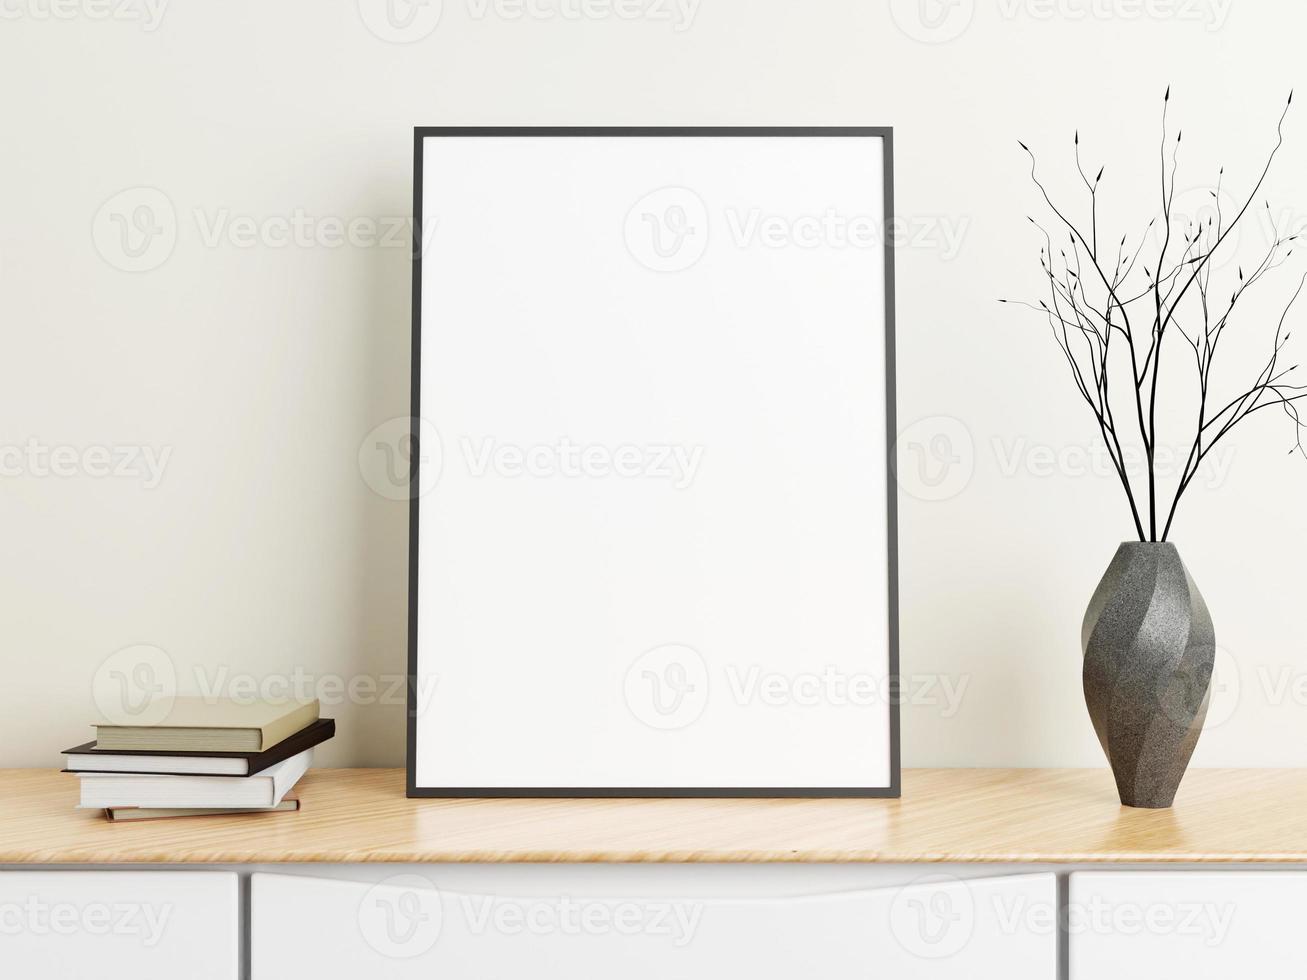 affiche noire verticale minimaliste ou maquette de cadre photo sur table en bois avec livres et vase dans une pièce. rendu 3d.